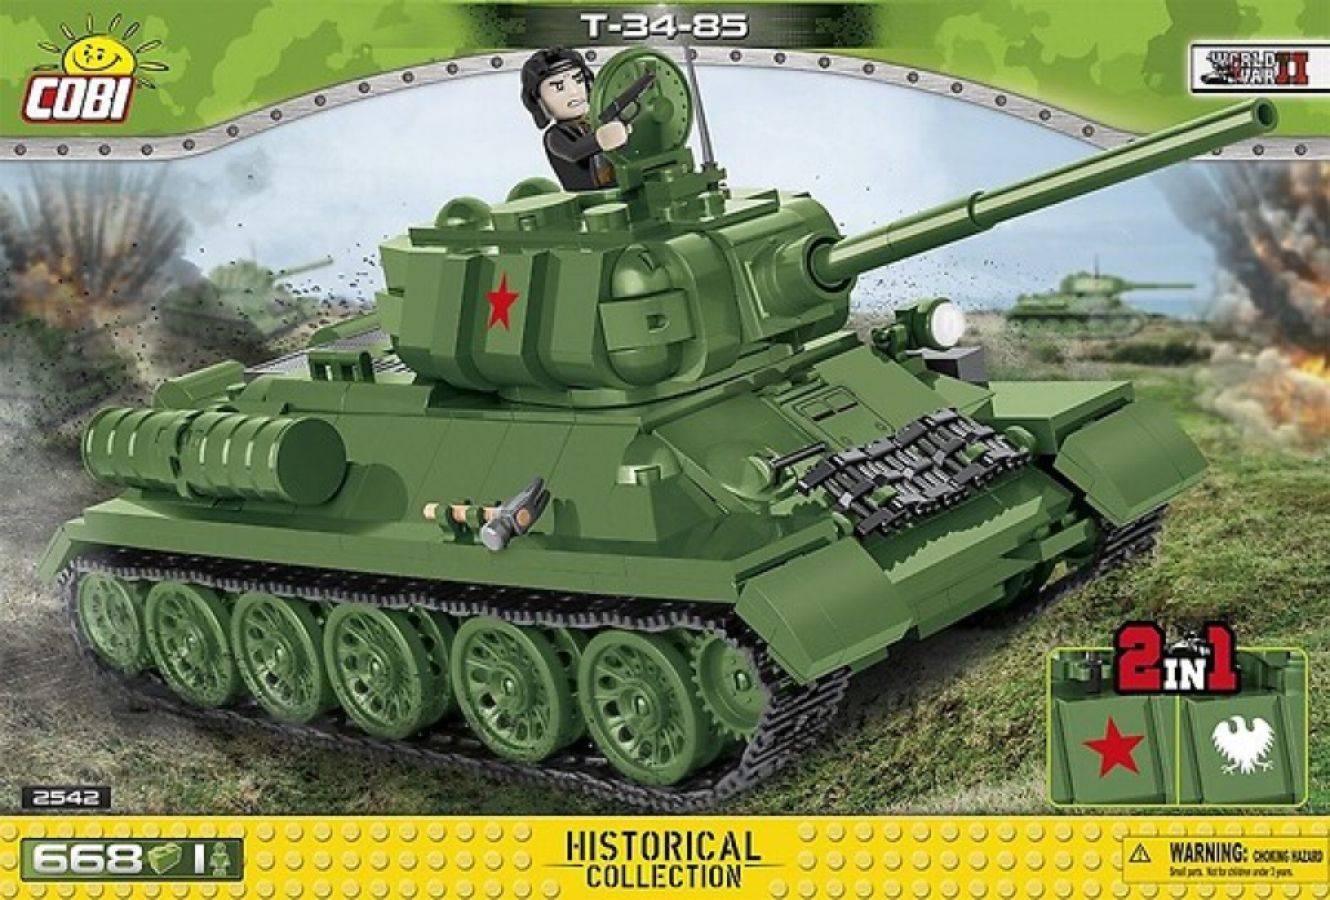 COB2542 World War II - T-34-85 Tank 668 pieces - Cobi - Titan Pop Culture